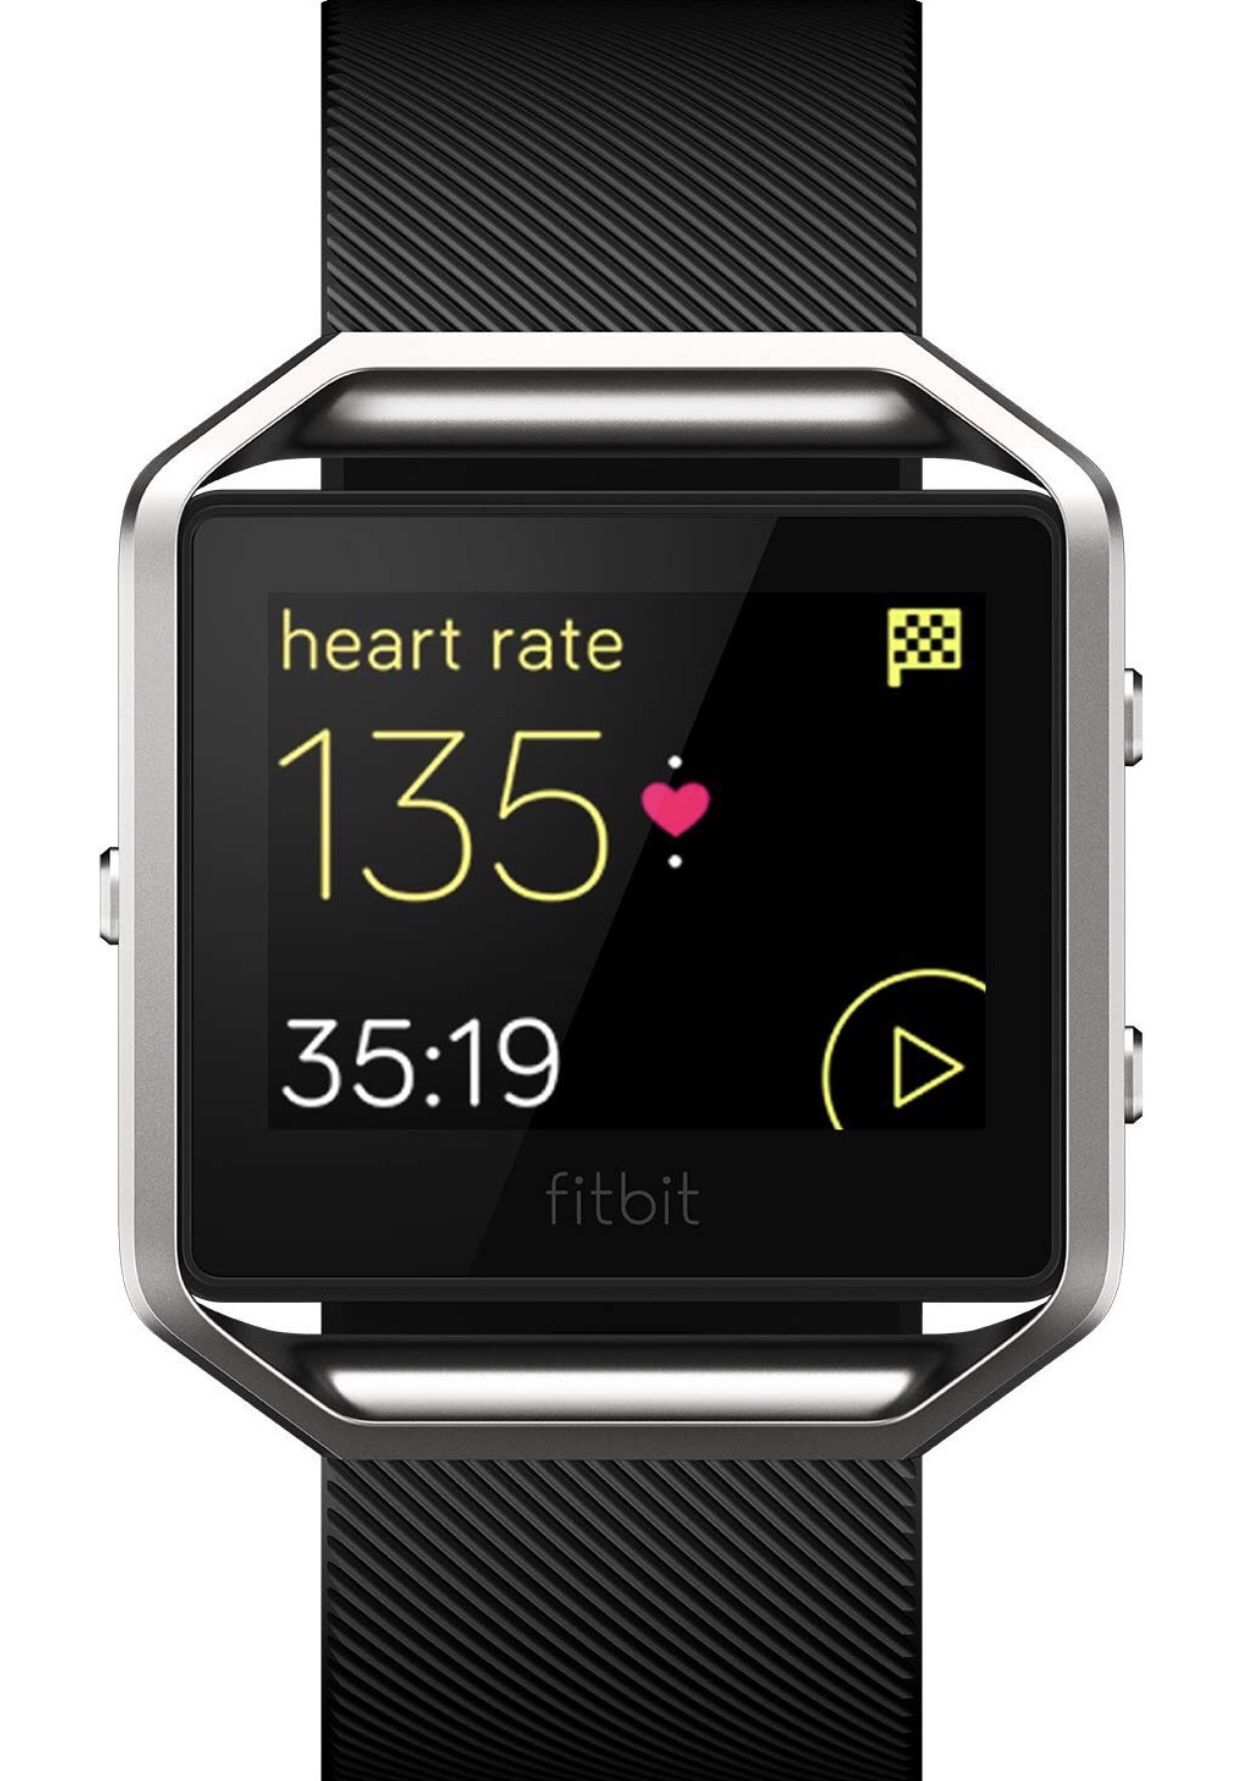 Fitbit Blaze fitness tracker smart watch activity tracker